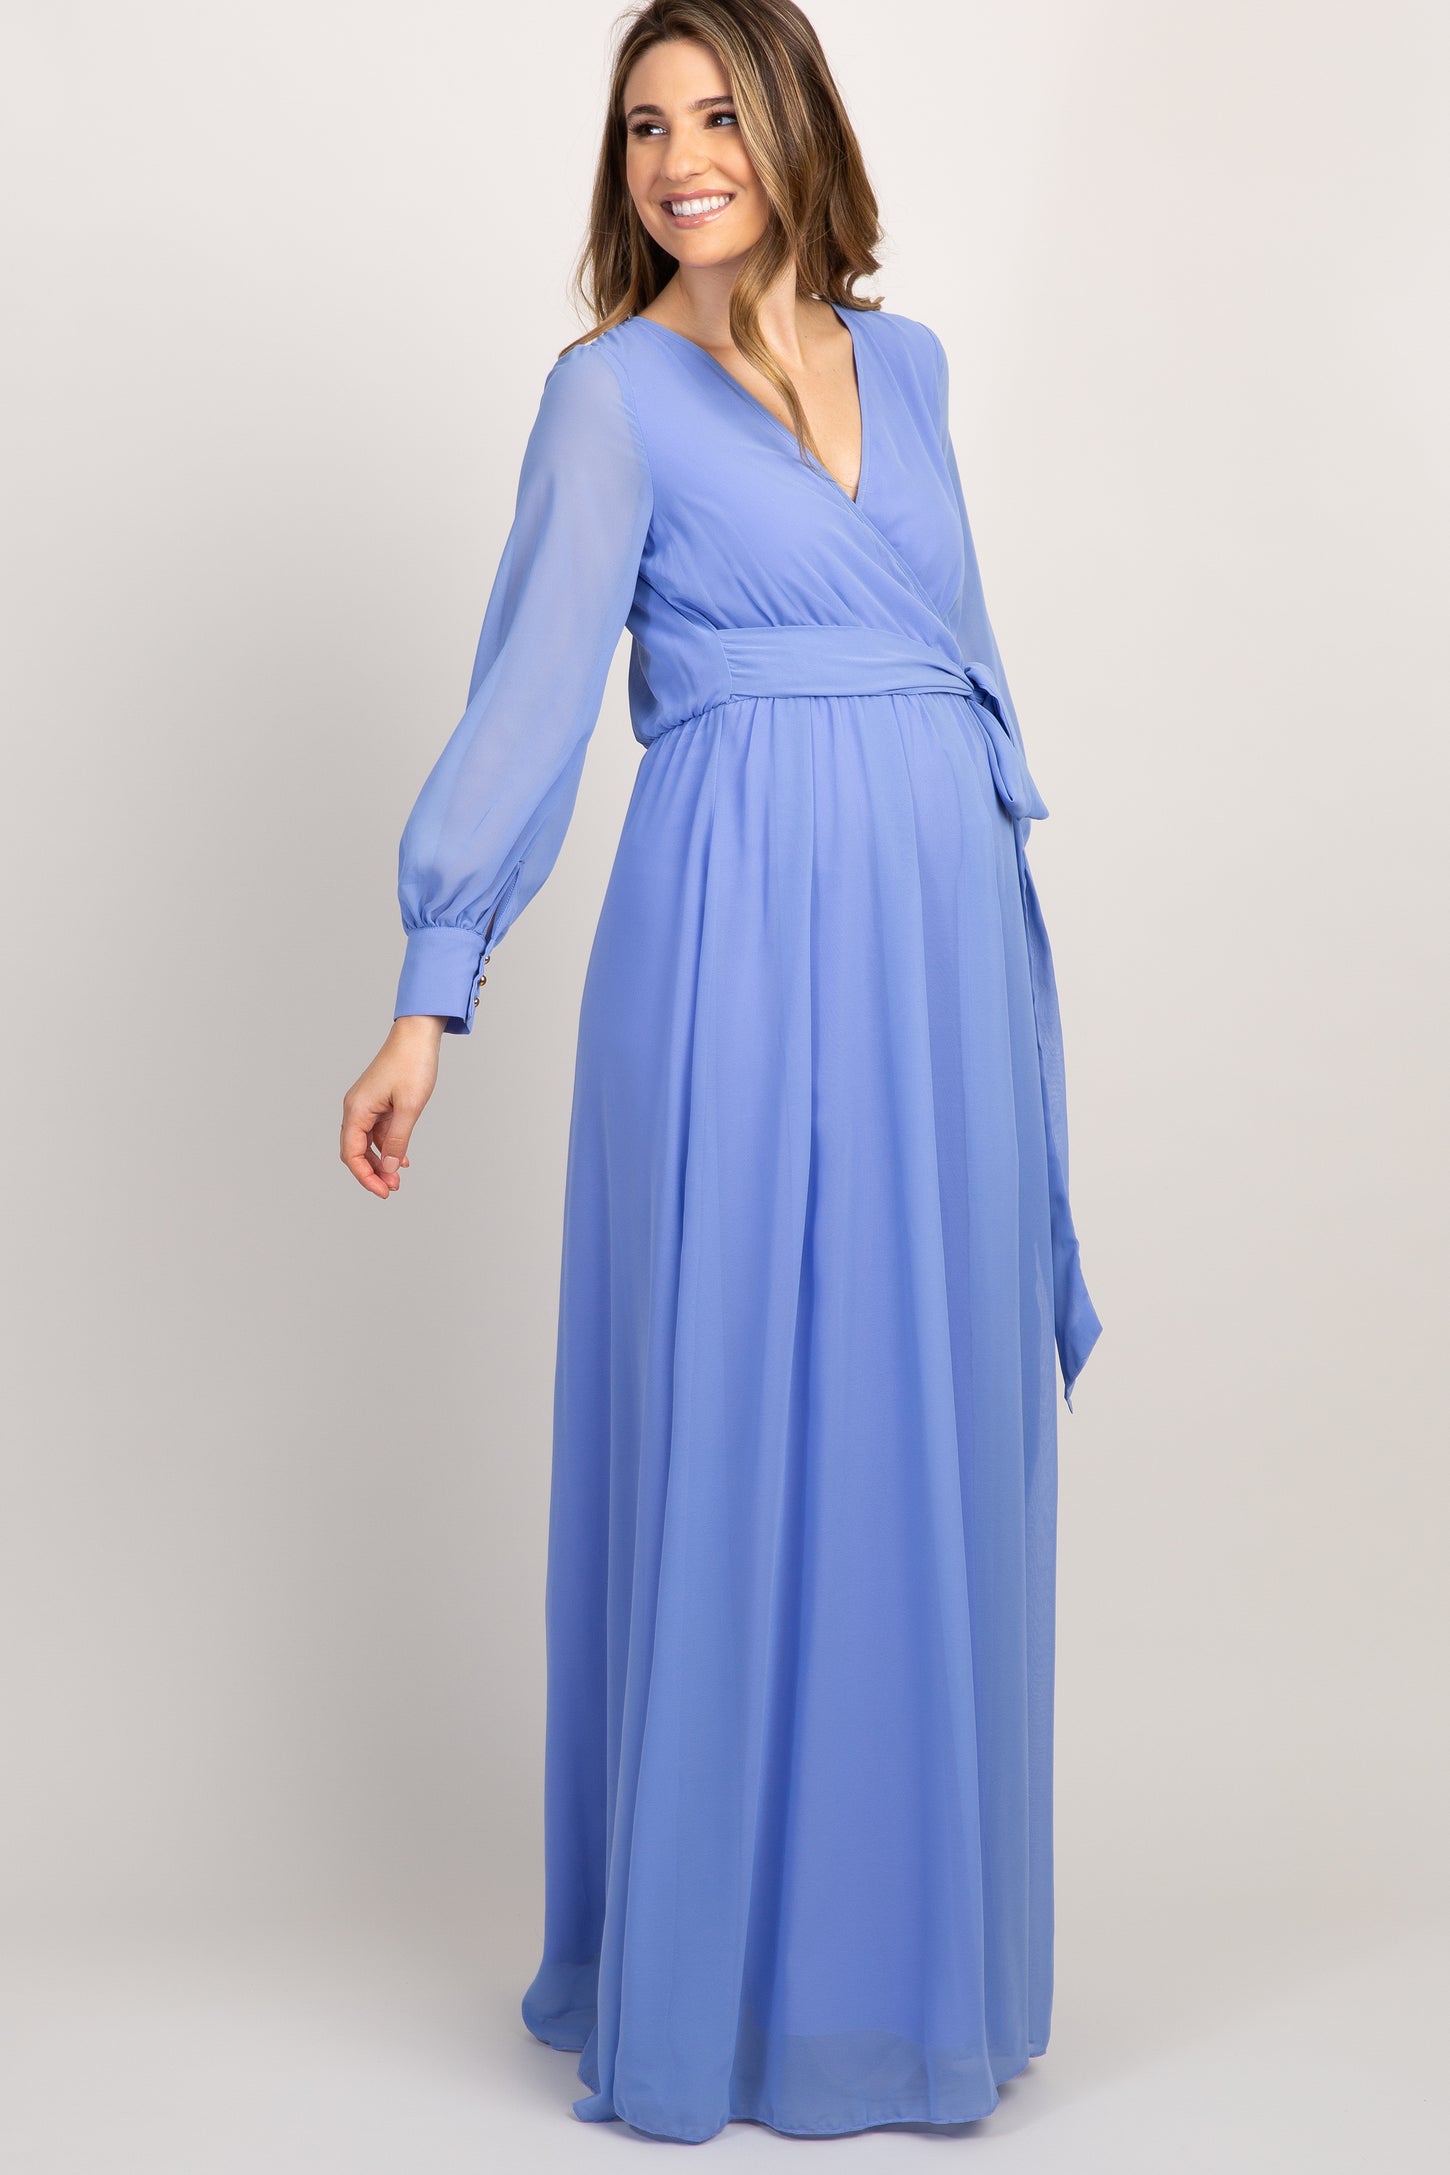 Periwinkle Chiffon Long Sleeve Pleated Maternity Maxi Dress– PinkBlush